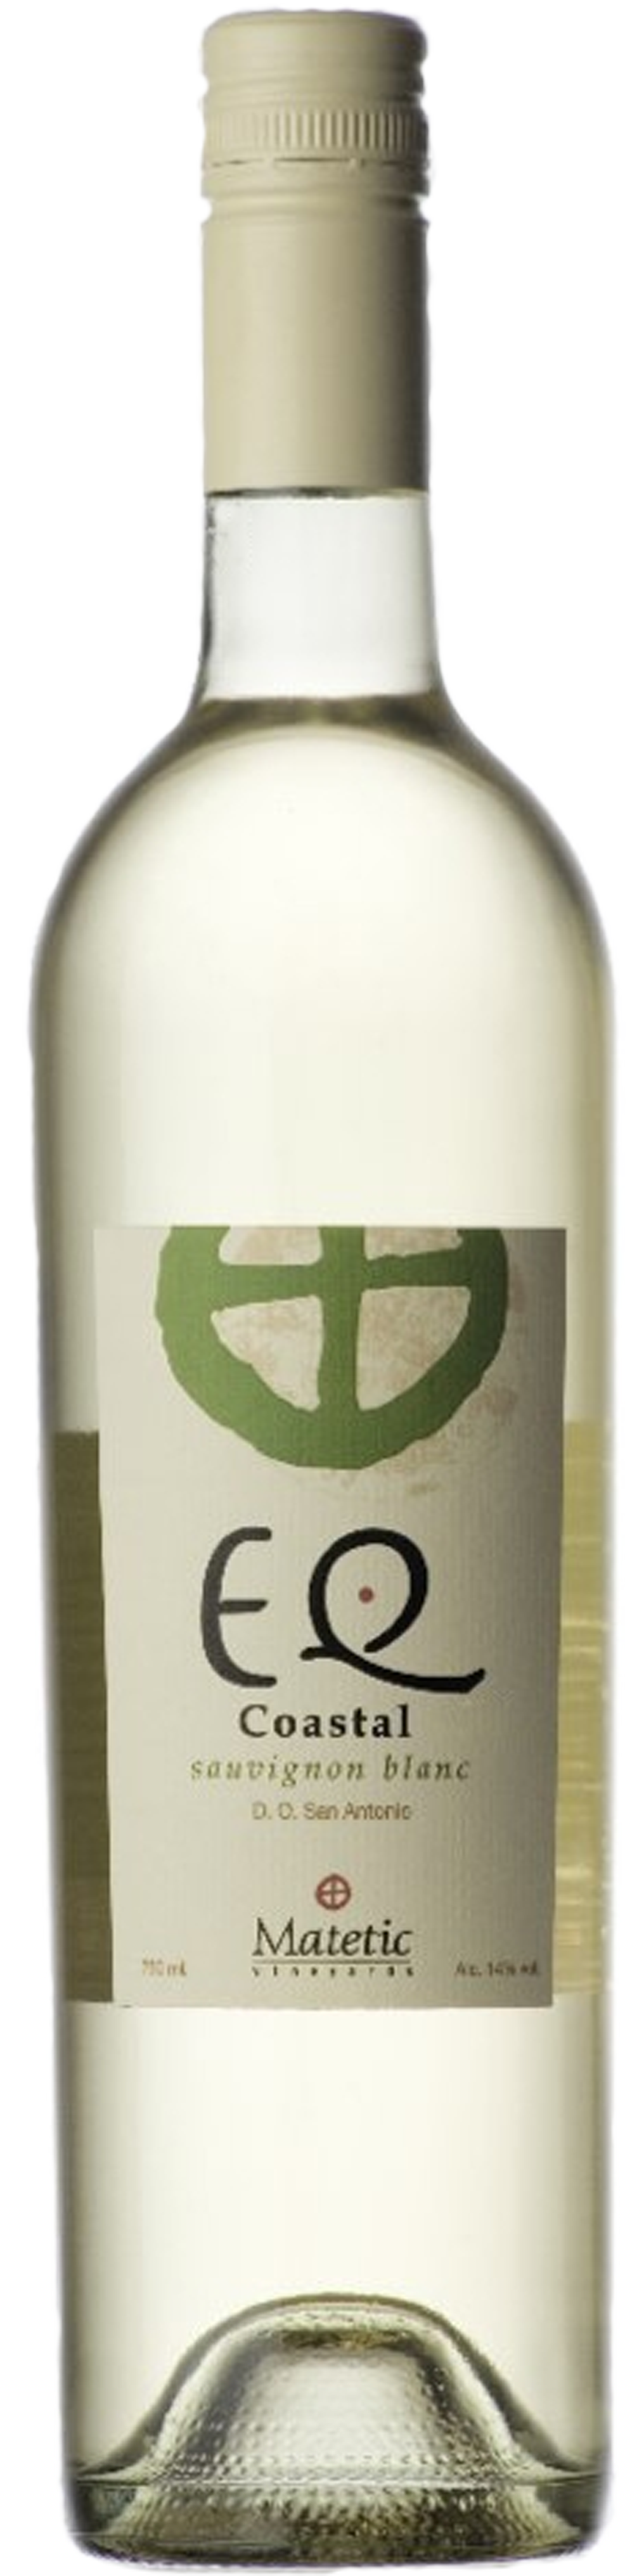 Bottle shot of 2011 EQ Coastal Sauvignon Blanc